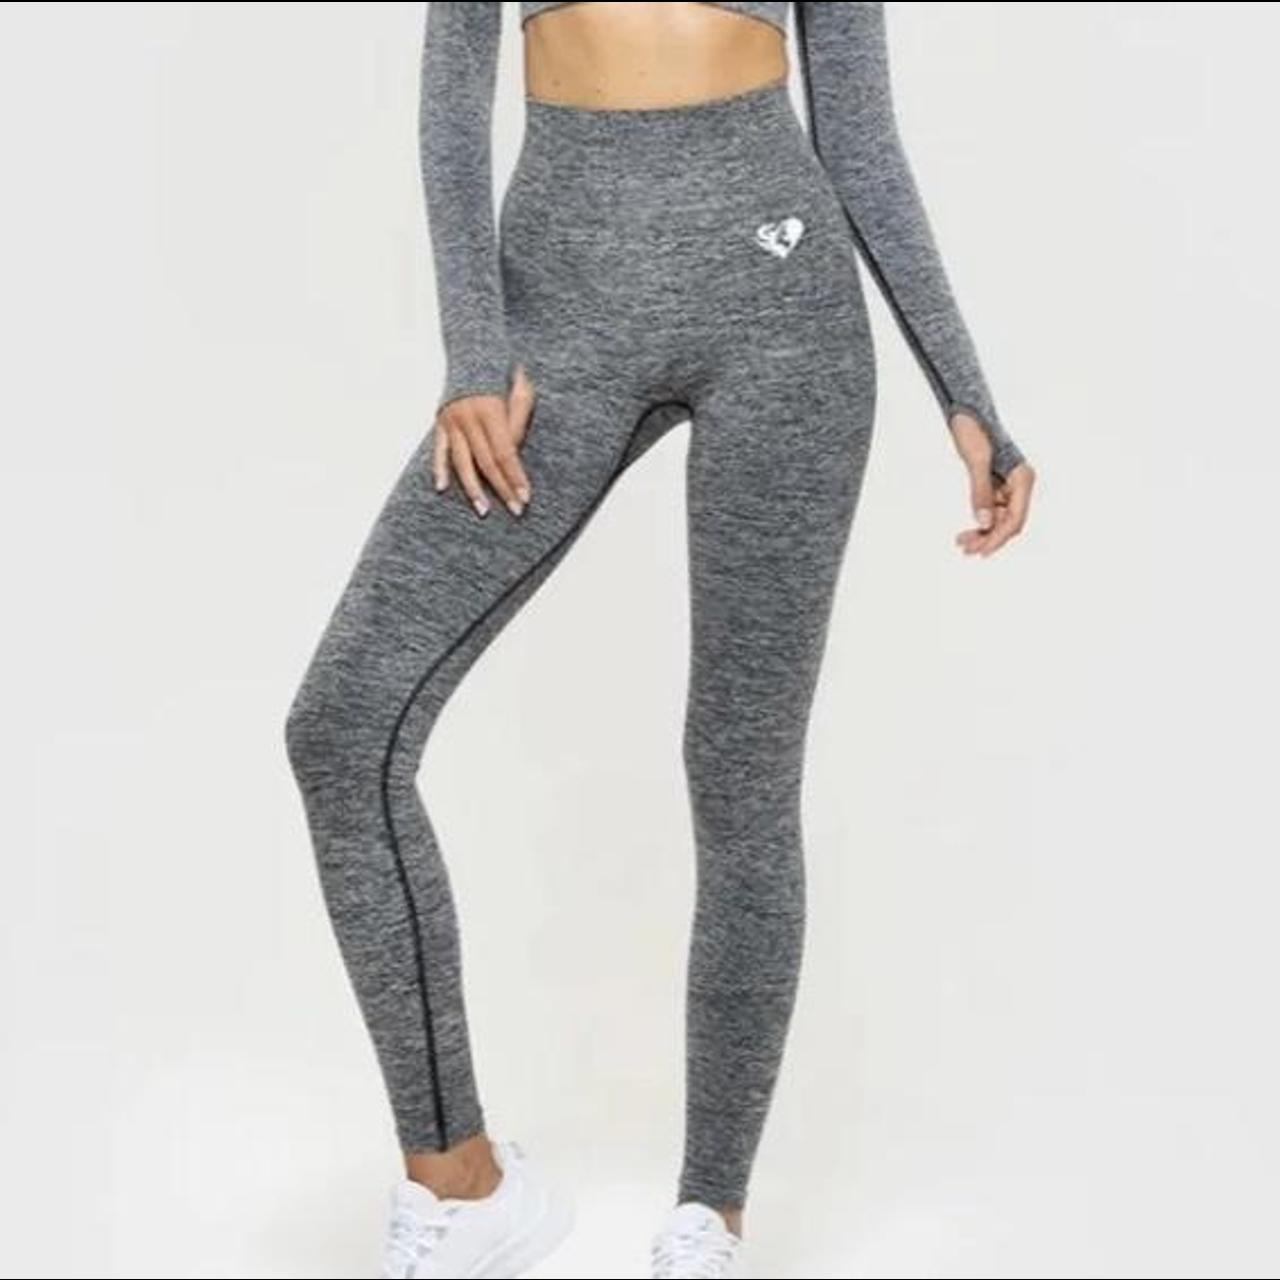 Women's best gray leggings Seamless SIZE XS Open - Depop